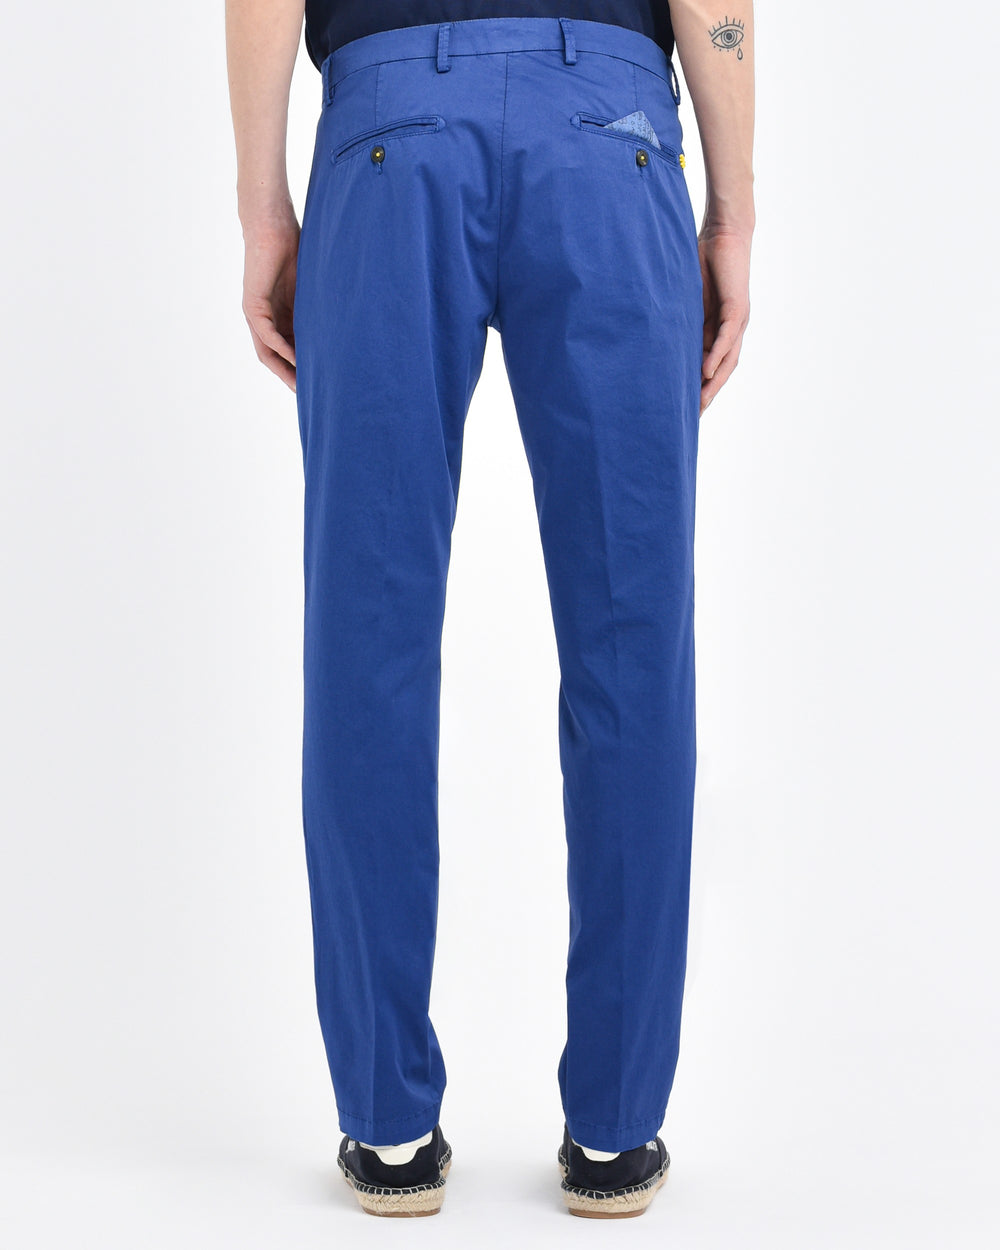 blue stretch cotton garment dyed pinces pants slim fit